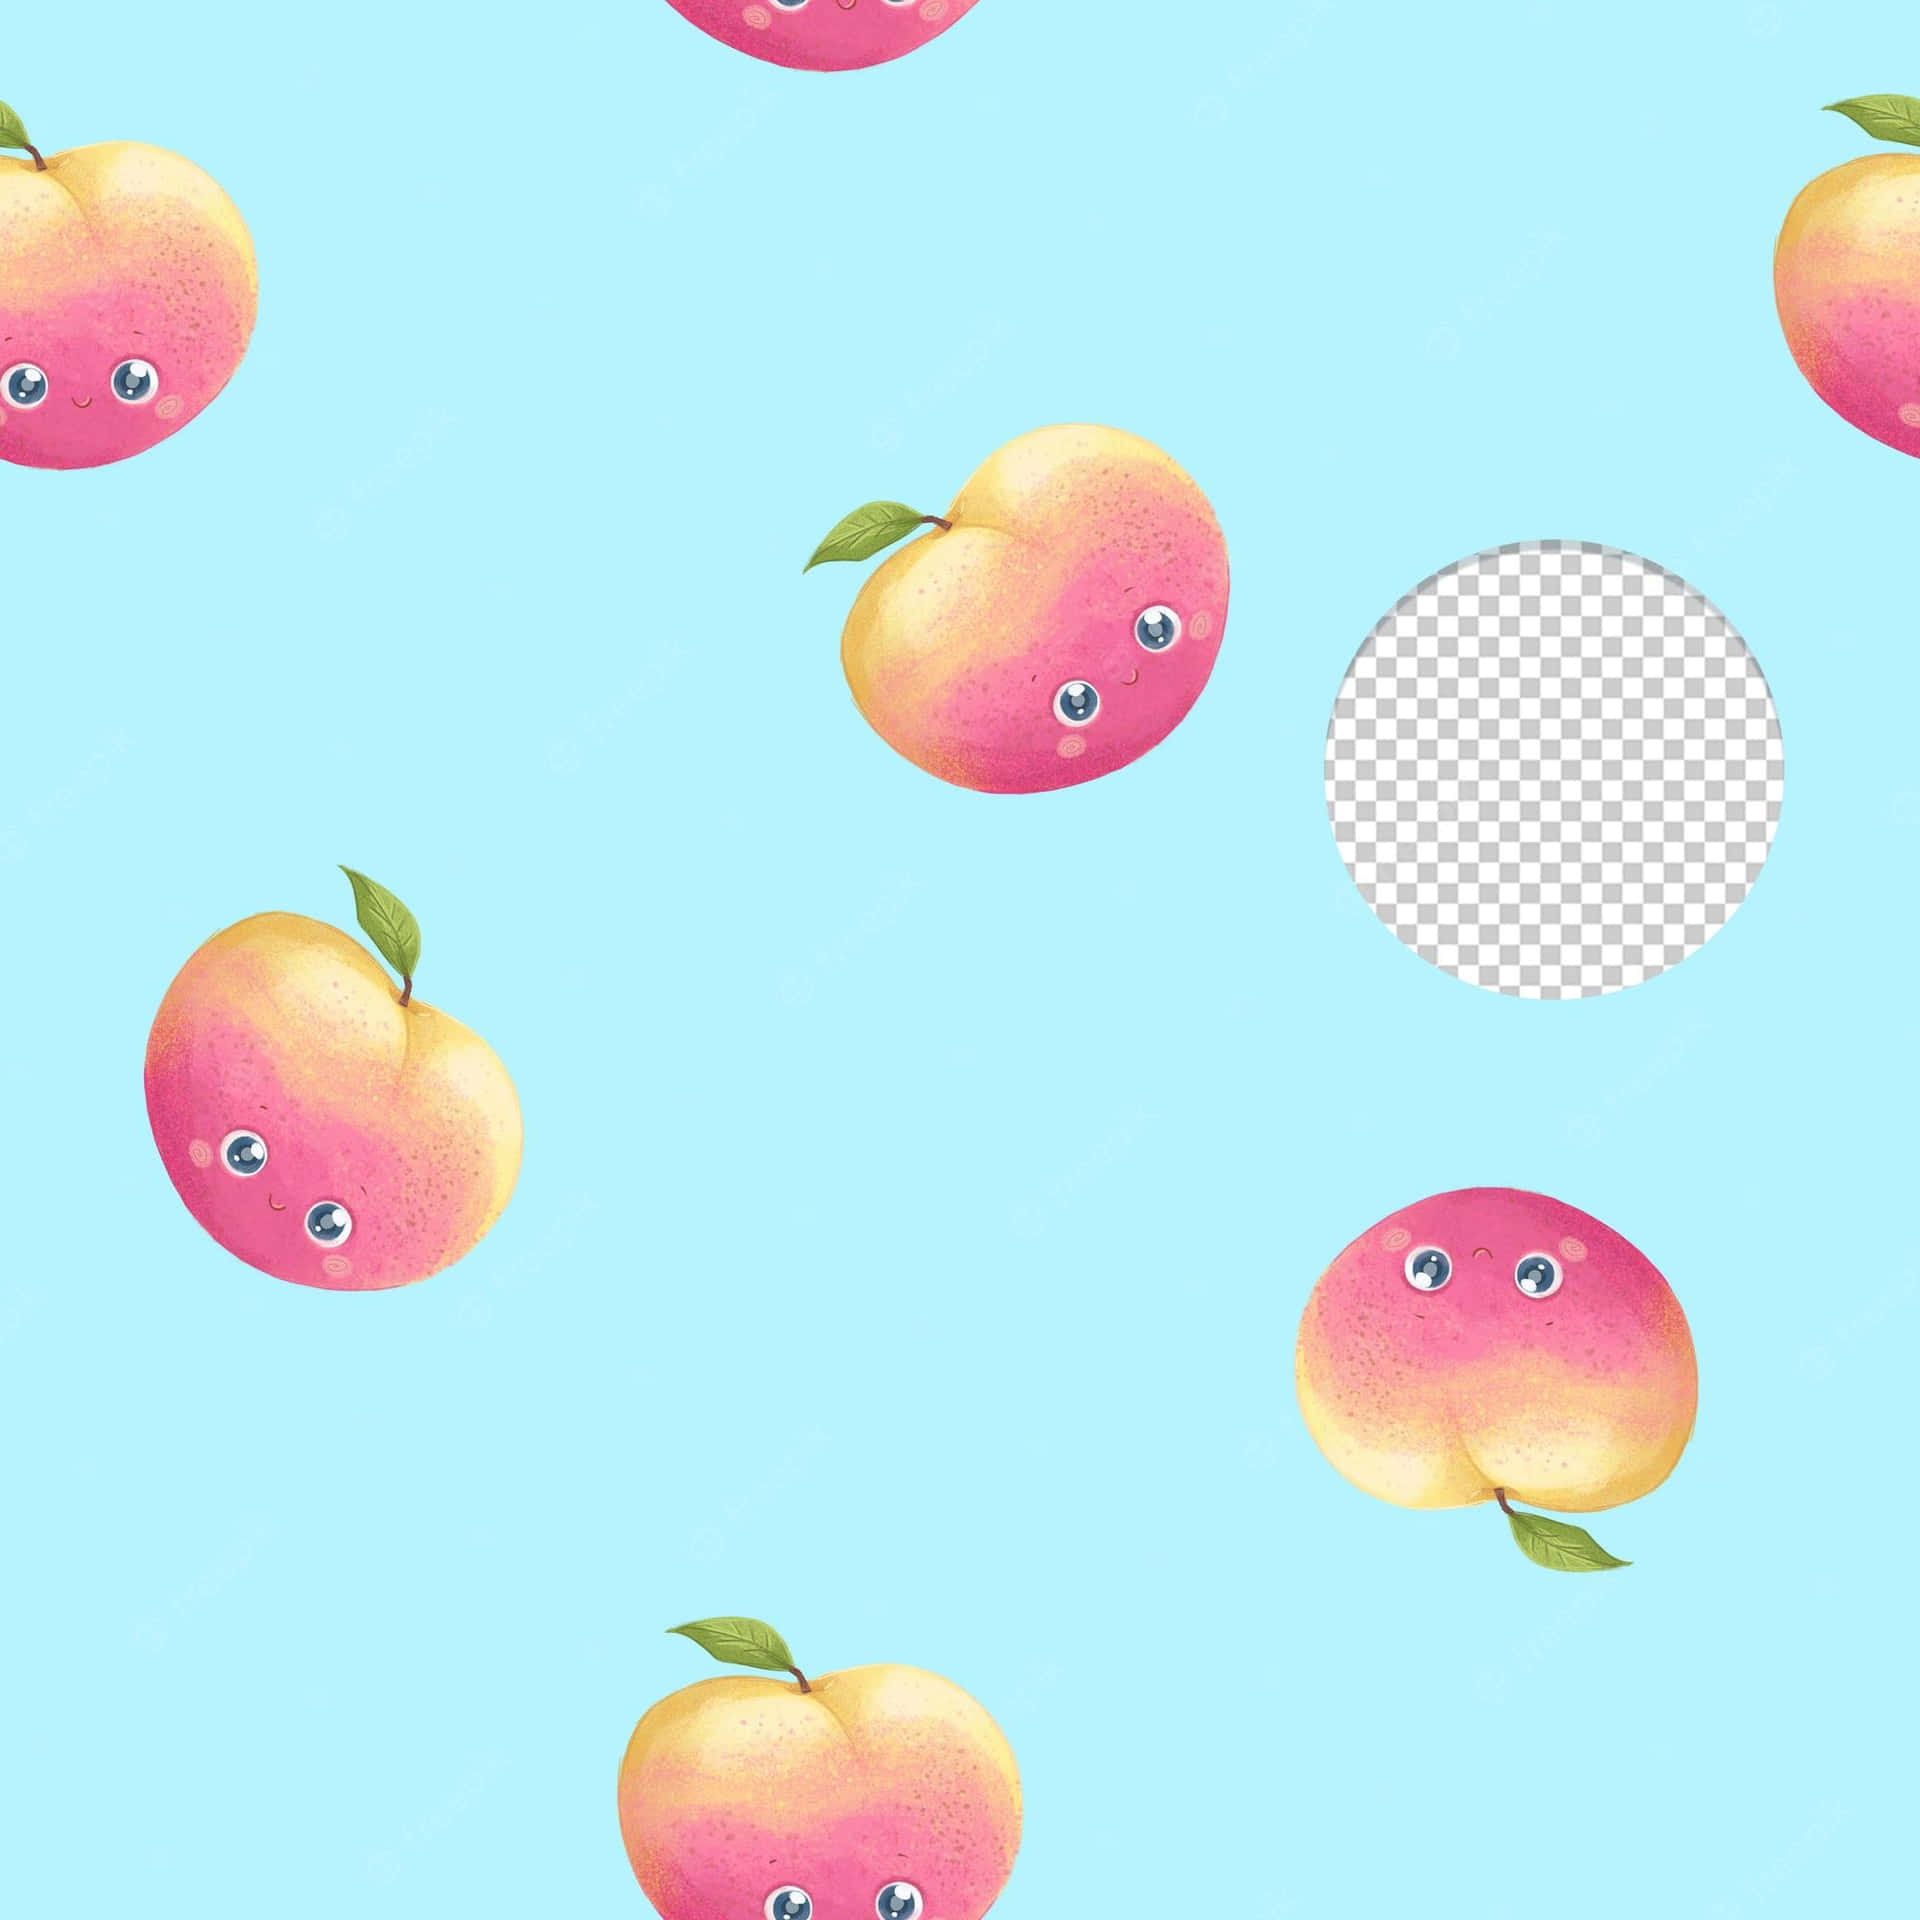 Süßwie Ein Pfirsich Wallpaper